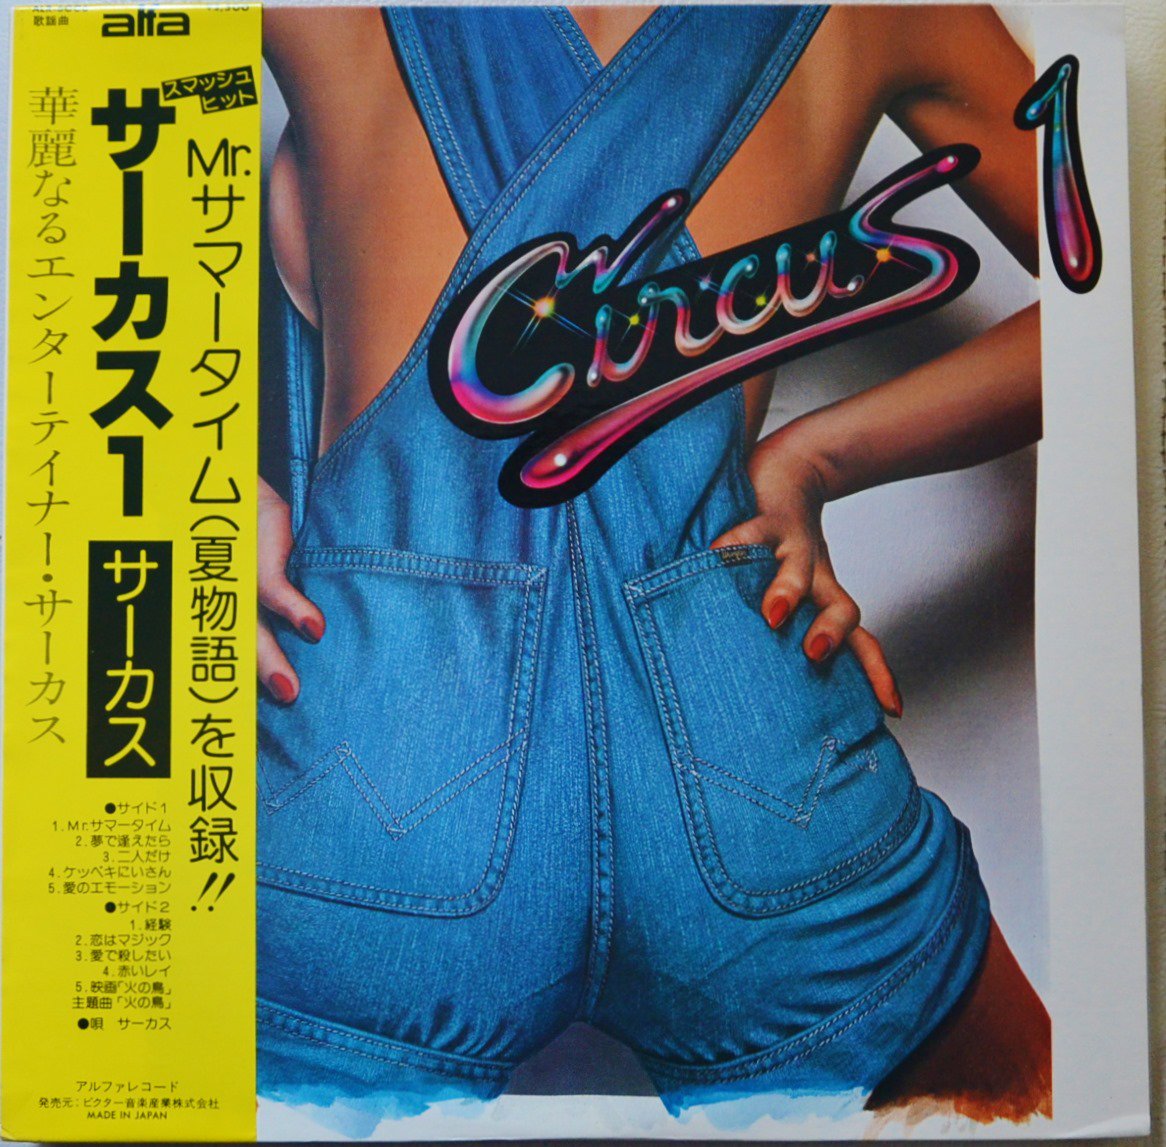 サーカス CIRCUS / サーカス 1 CIRCUS 1 (LP)